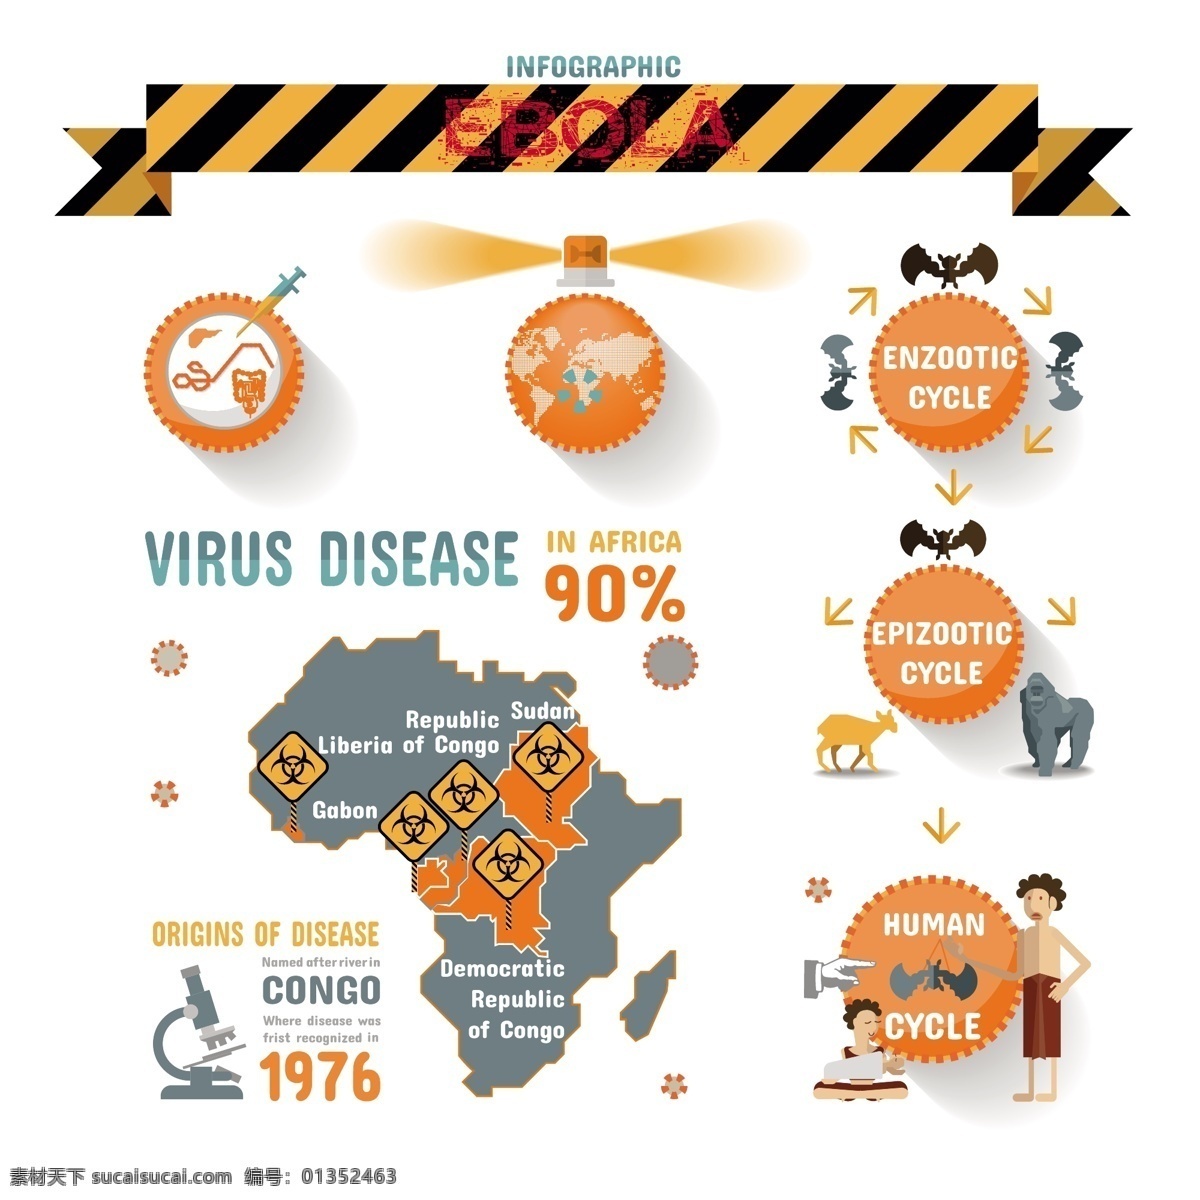 埃博拉 病毒 信息 图 信息图 传播途径 埃博拉病毒 传染源 ebola 矢量图